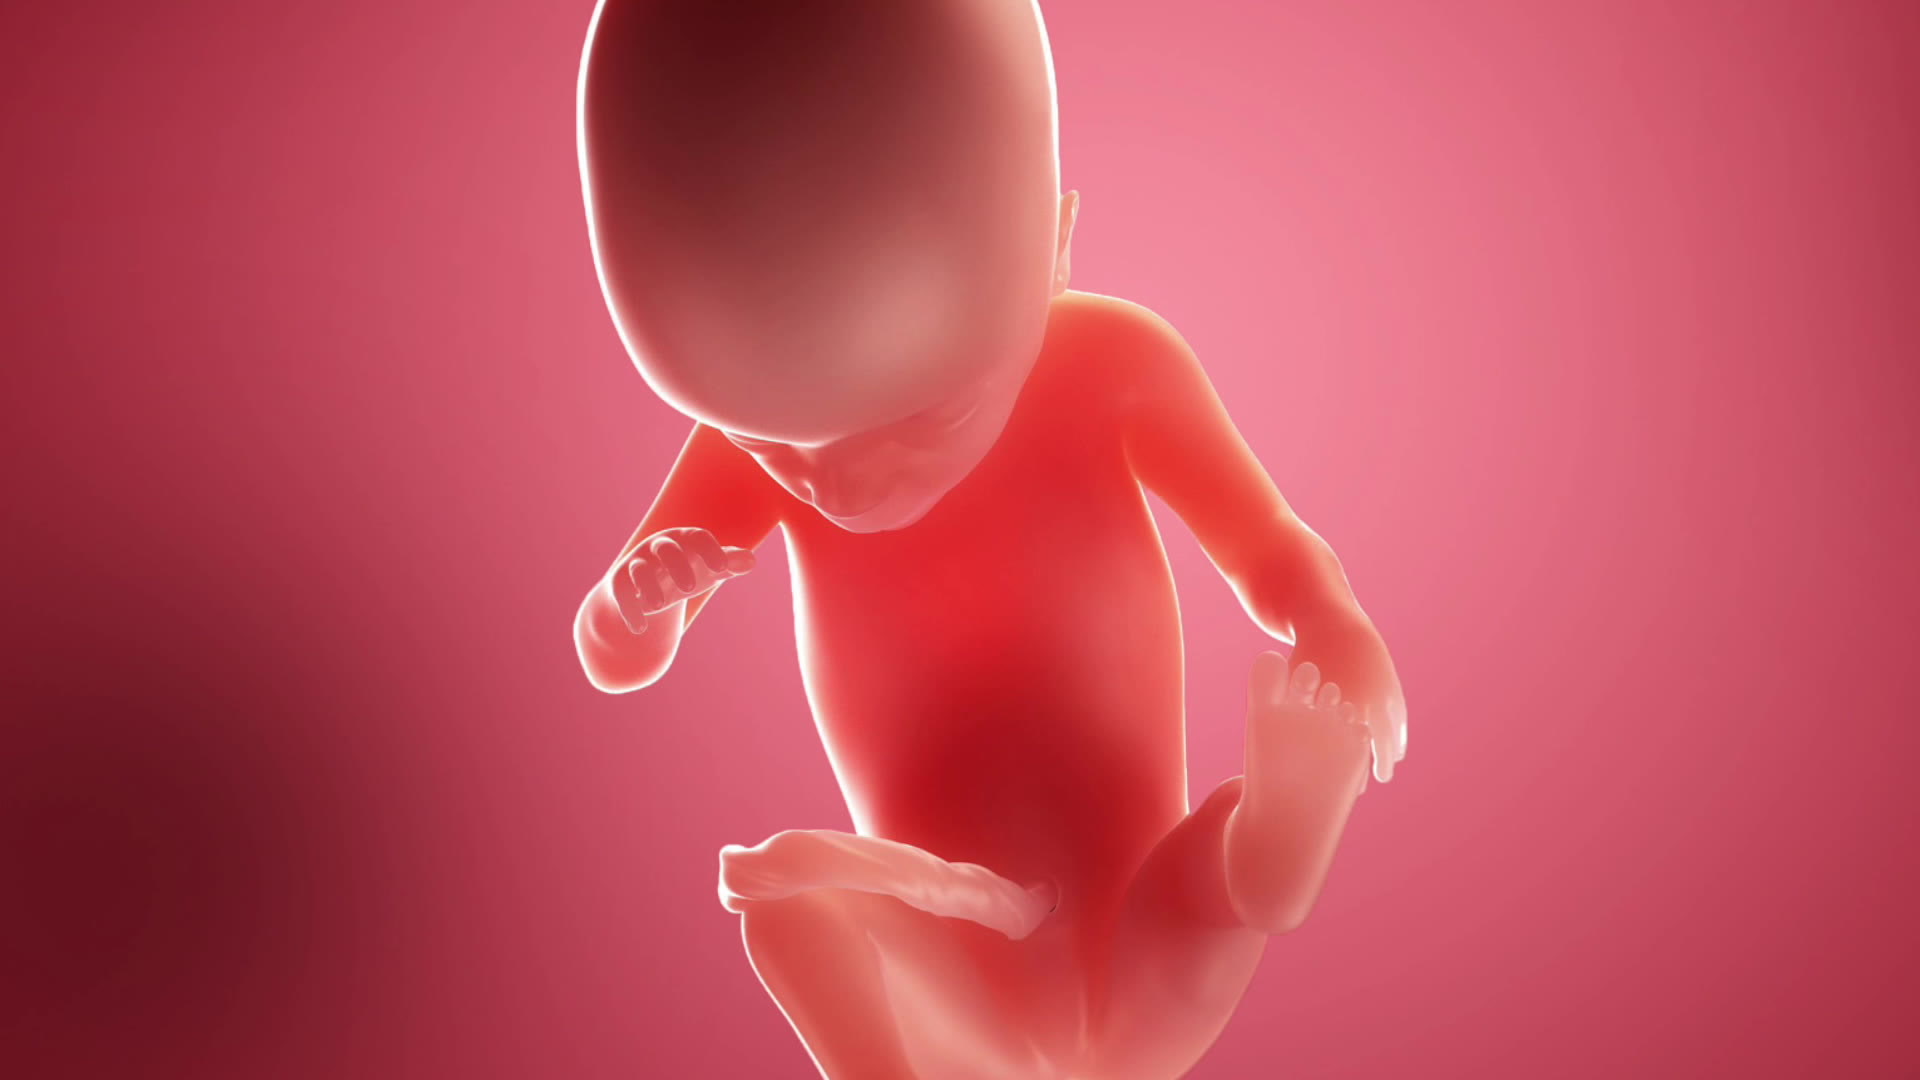 Semana 21 de embarazo: el bebé continúa moviéndose